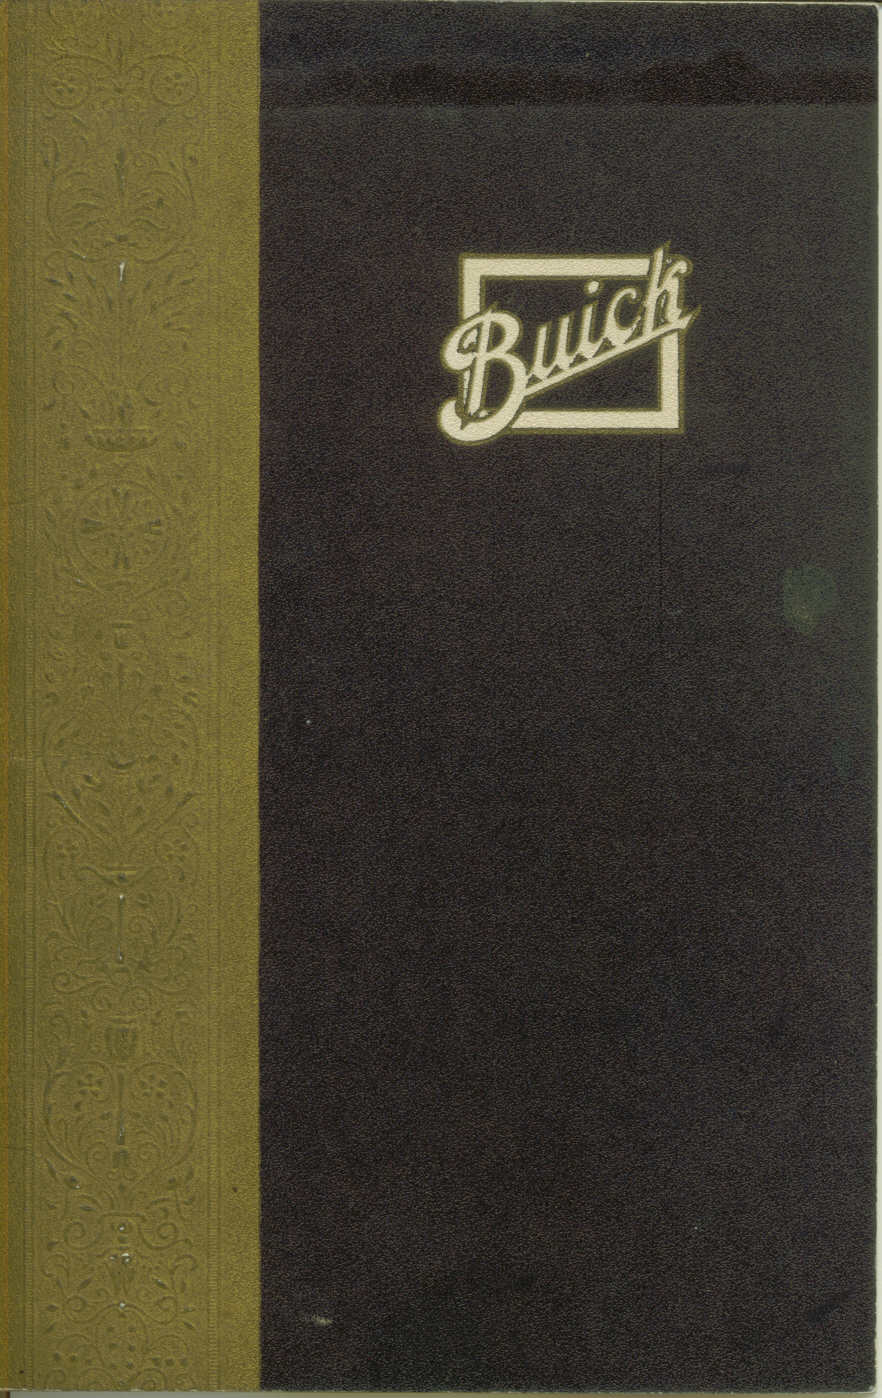 1921 Buick Brochure-01